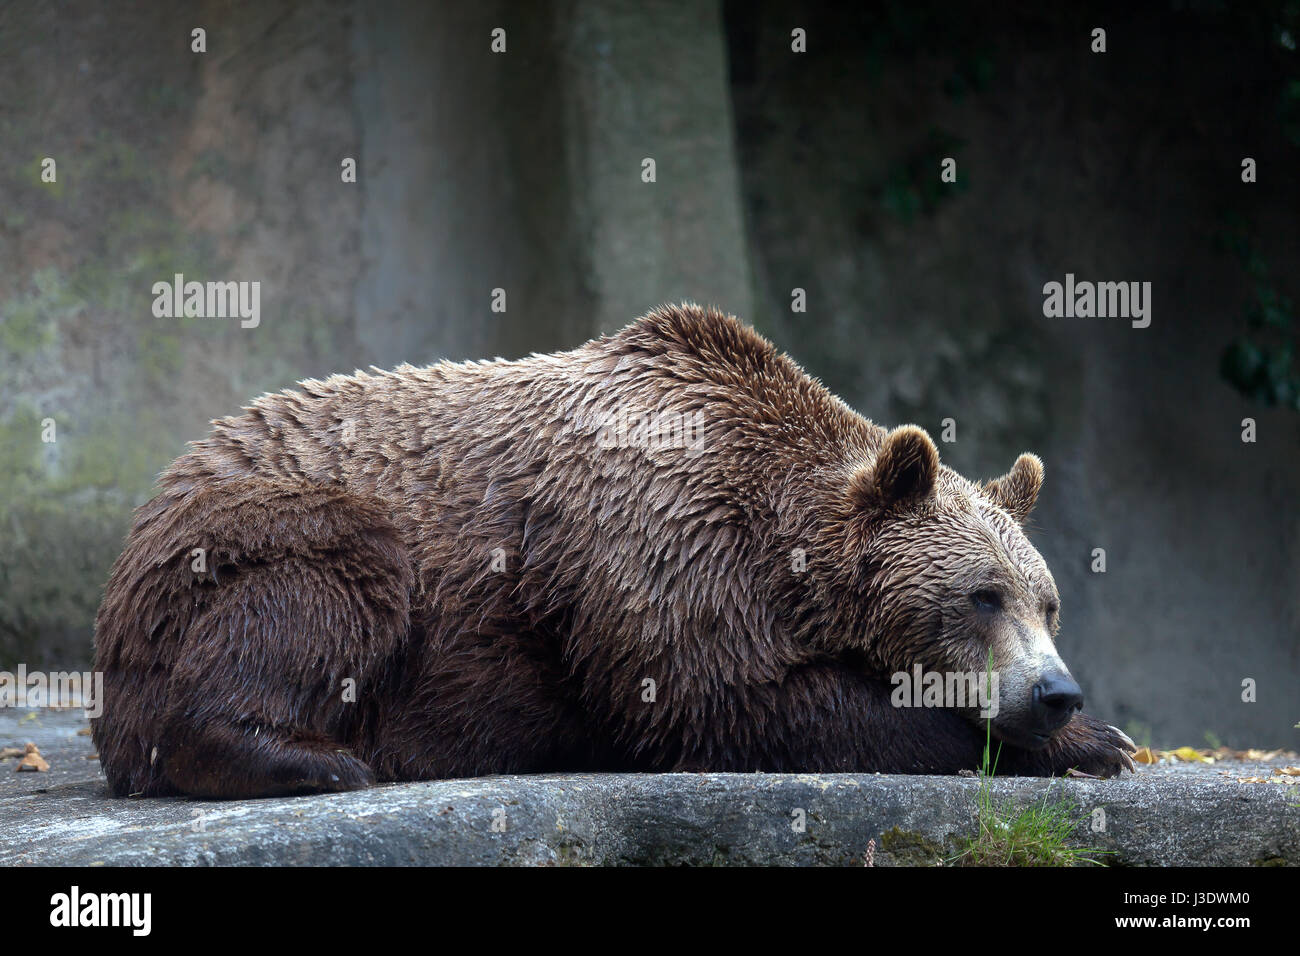 Ein Braunbär männliches Exemplar, Profil entnommen. Bär, liegend, vollständige Abbildung. Stockfoto